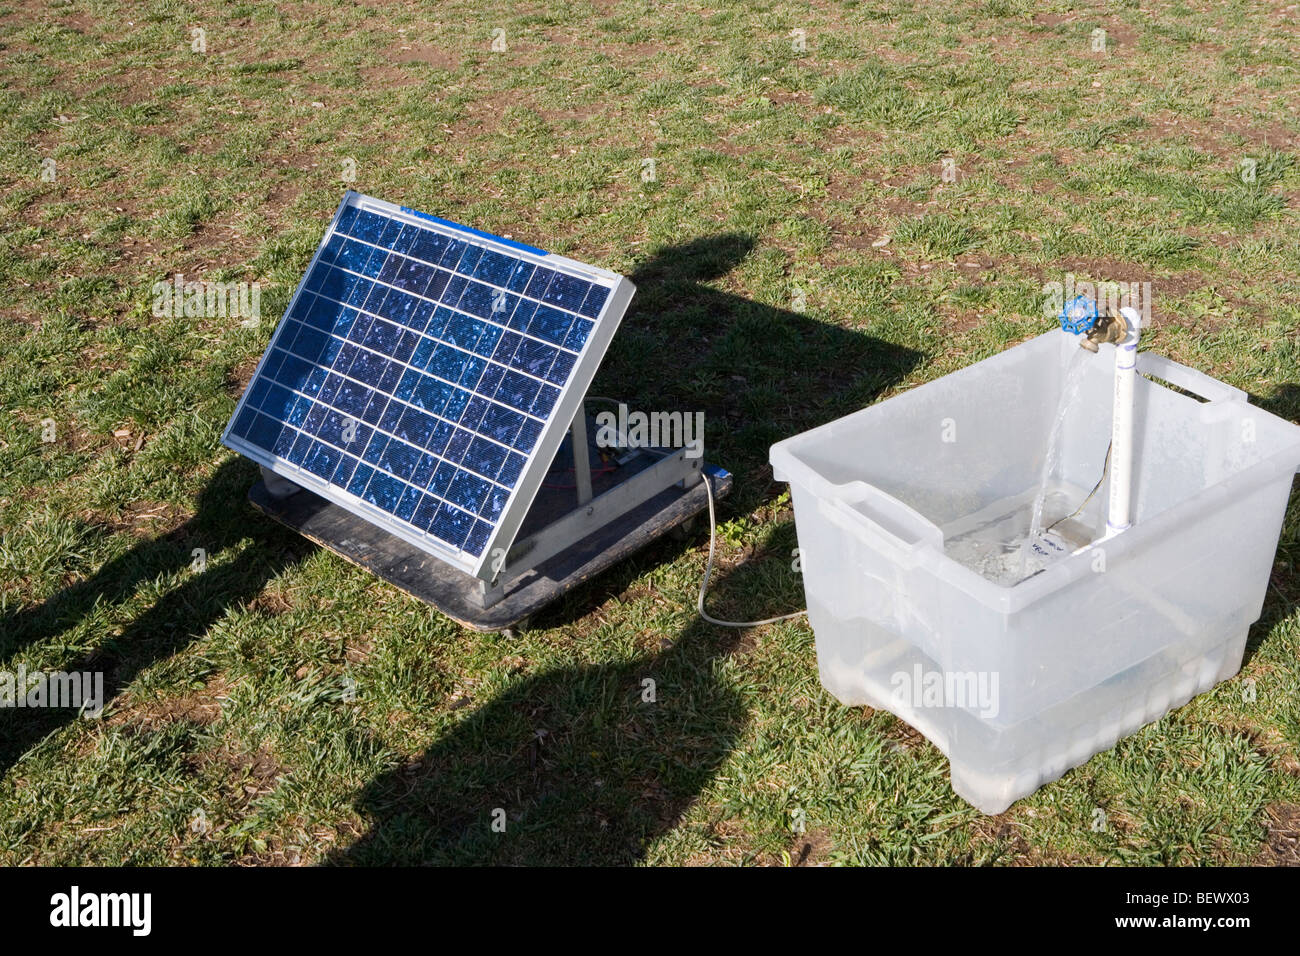 Pompe eau solaire illust pompage - Energies Media